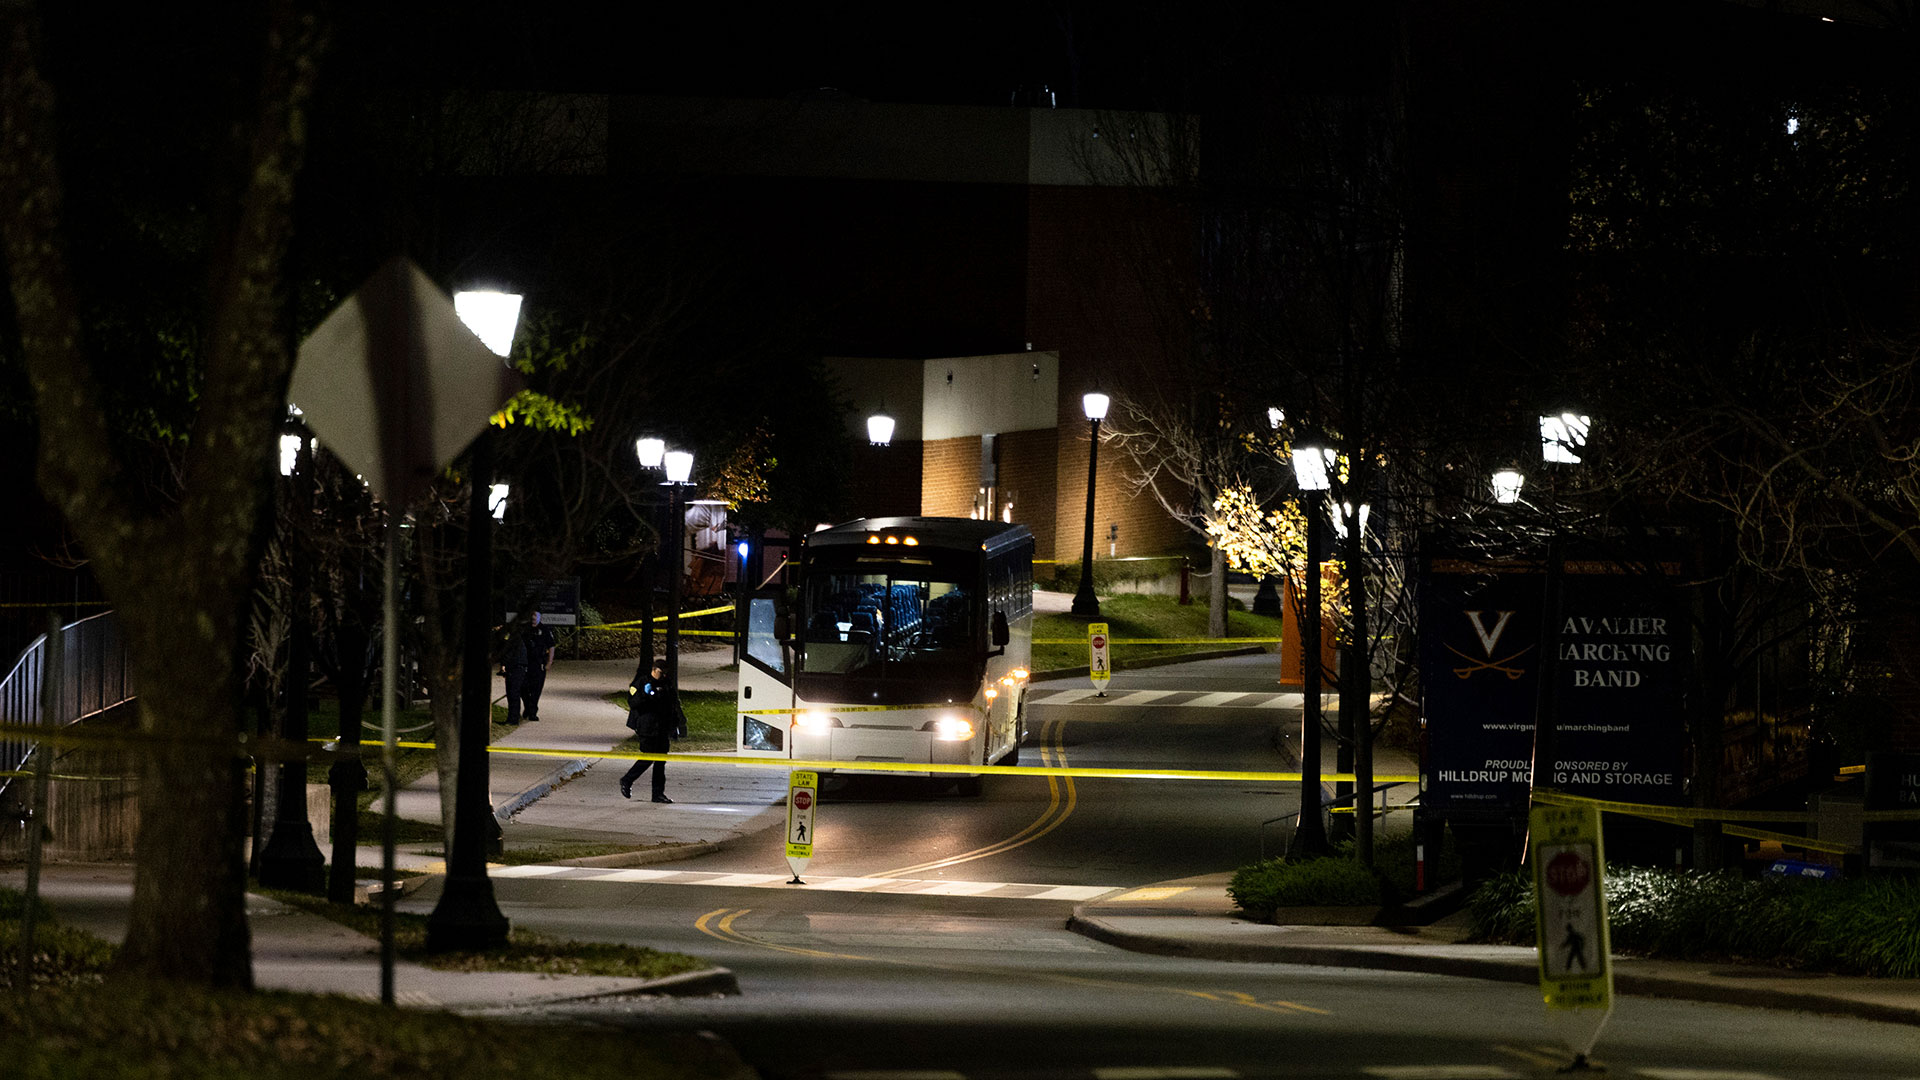 El manejo de emergencias de la universidad emitió una alerta el lunes por la noche notificando a la comunidad del campus sobre un “arma de fuego de atacante activo”. El mensaje advertía a los estudiantes que se refugiaran en el lugar luego de un informe de disparos en Culbreth Road en el campus. (foto de AP)